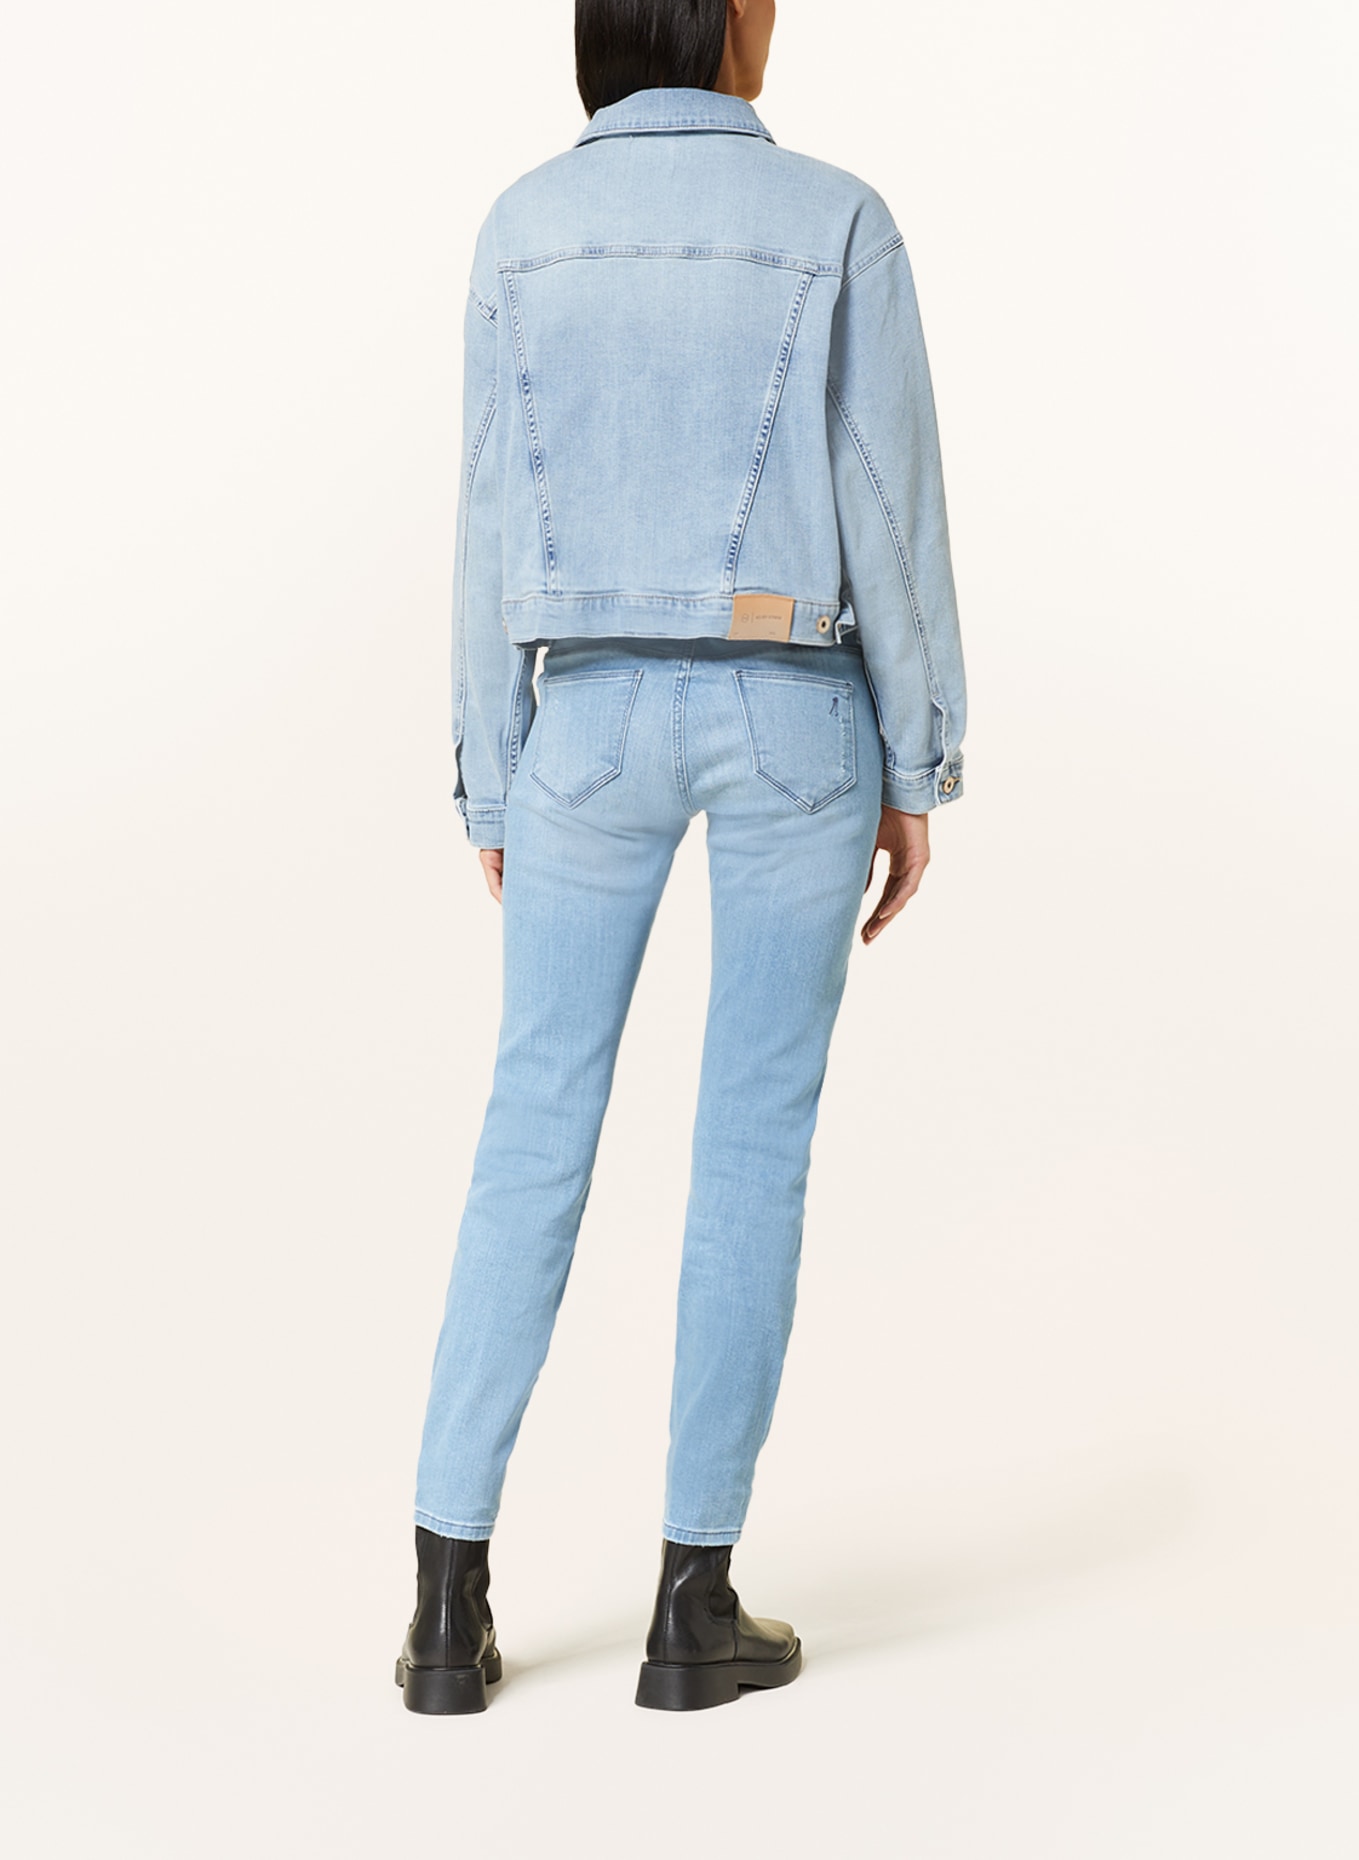 GOLDGARN DENIM Skinny jeans JUNGBUSCH, Color: 1070 light blue (Image 3)